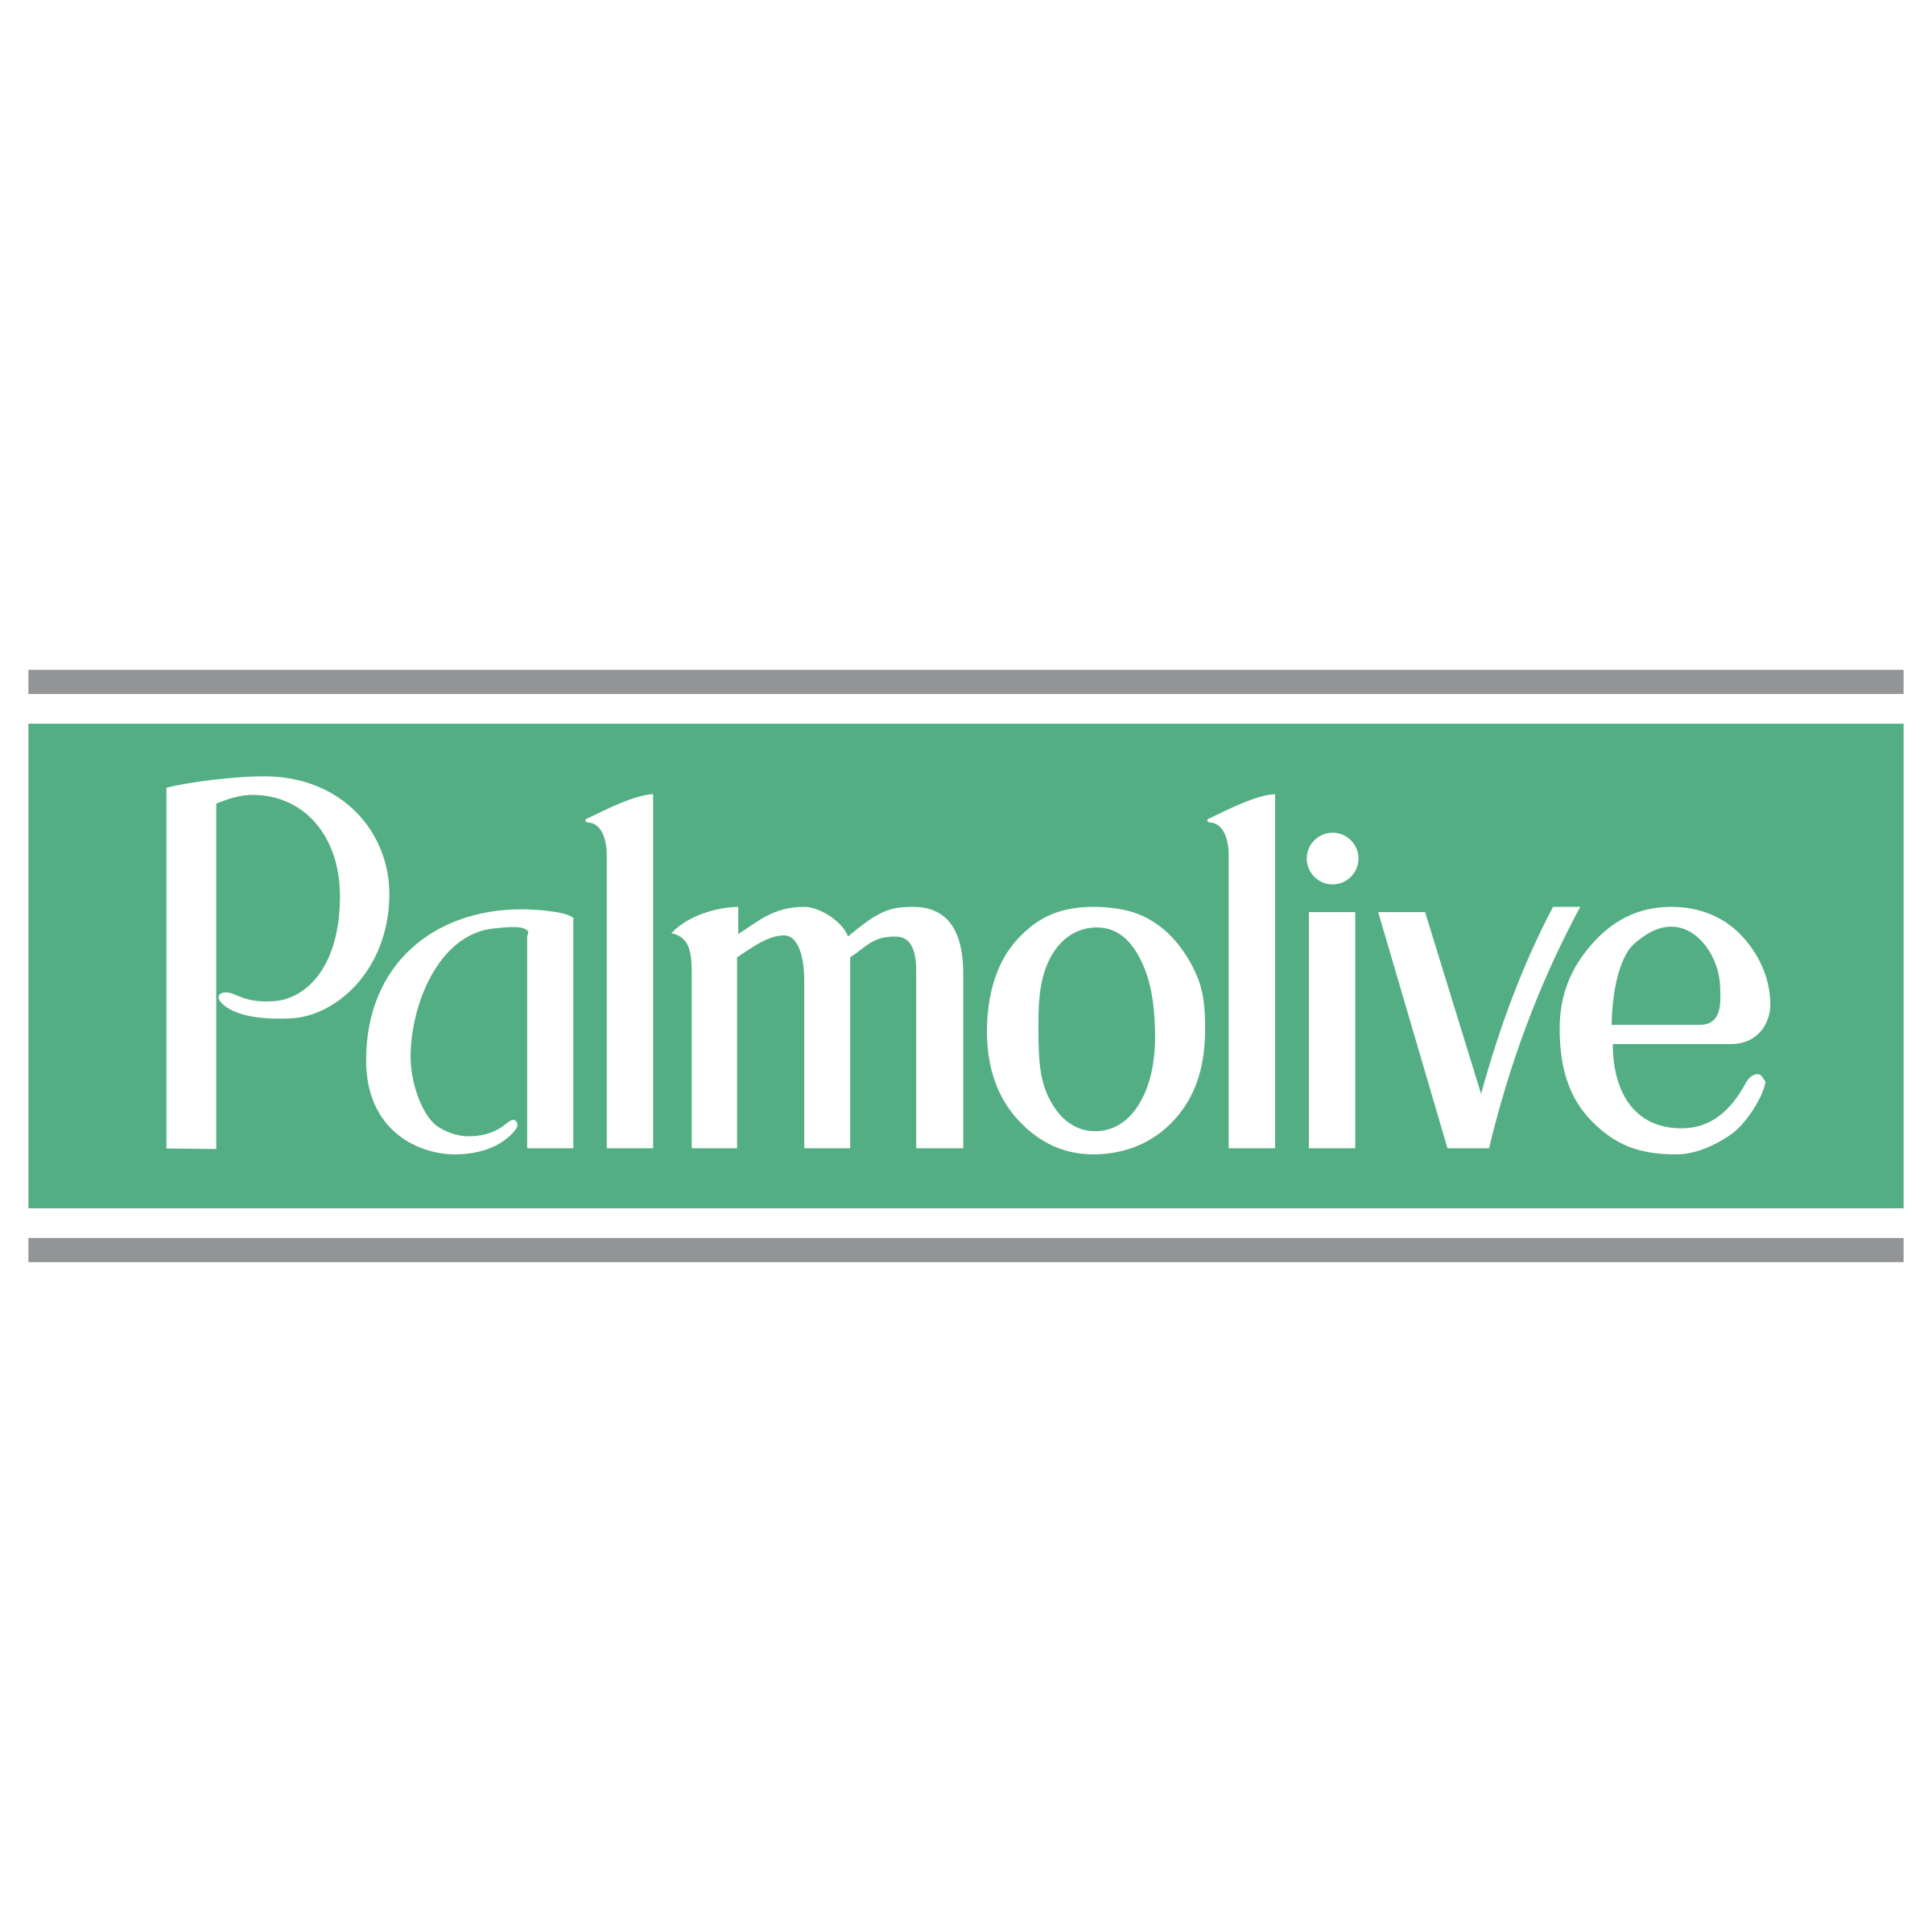 Palmolive Logo PNG Transparent & SVG Vector.